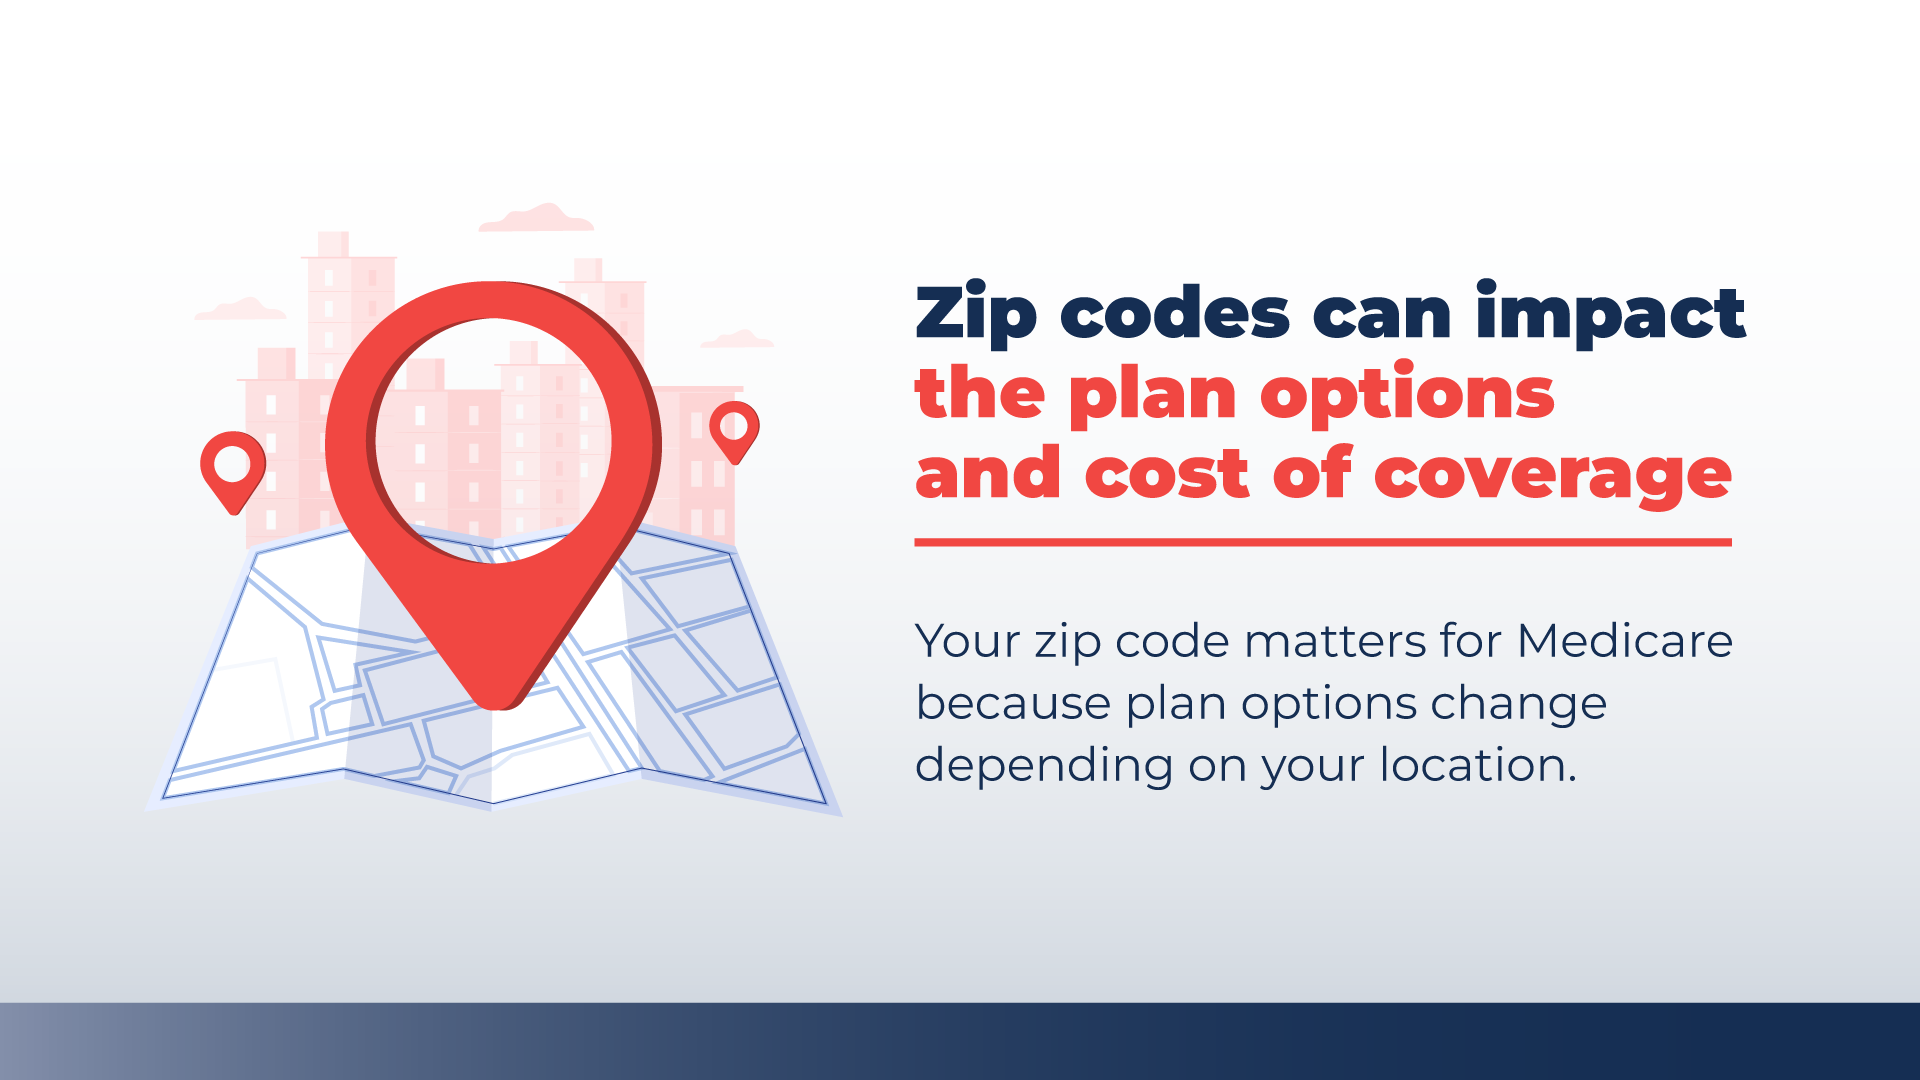 Medicare zip codes